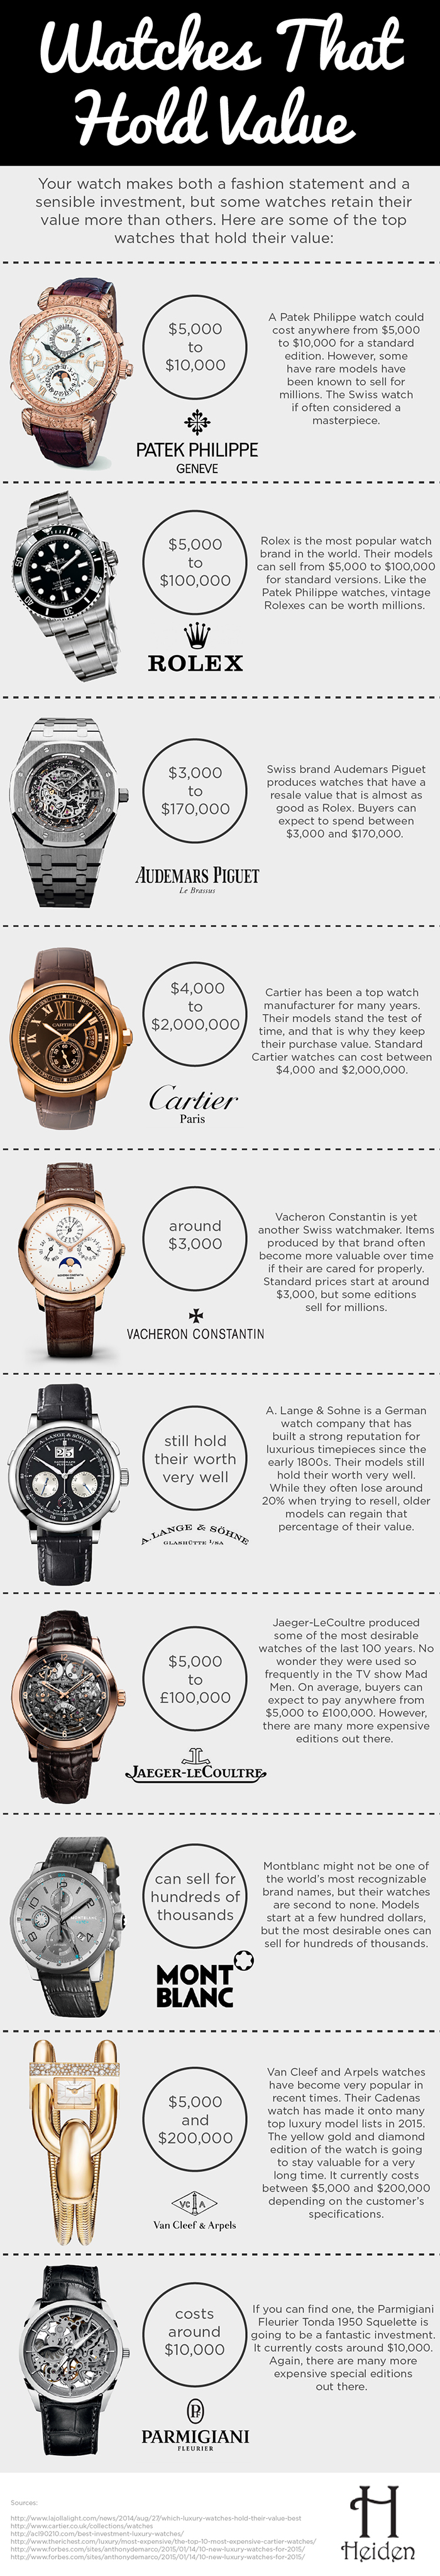 Port Implementeren Kardinaal Heiden Watch Winders Luxury Watches That Hold Their Value Infographic -  Heiden Watch Winders Blog